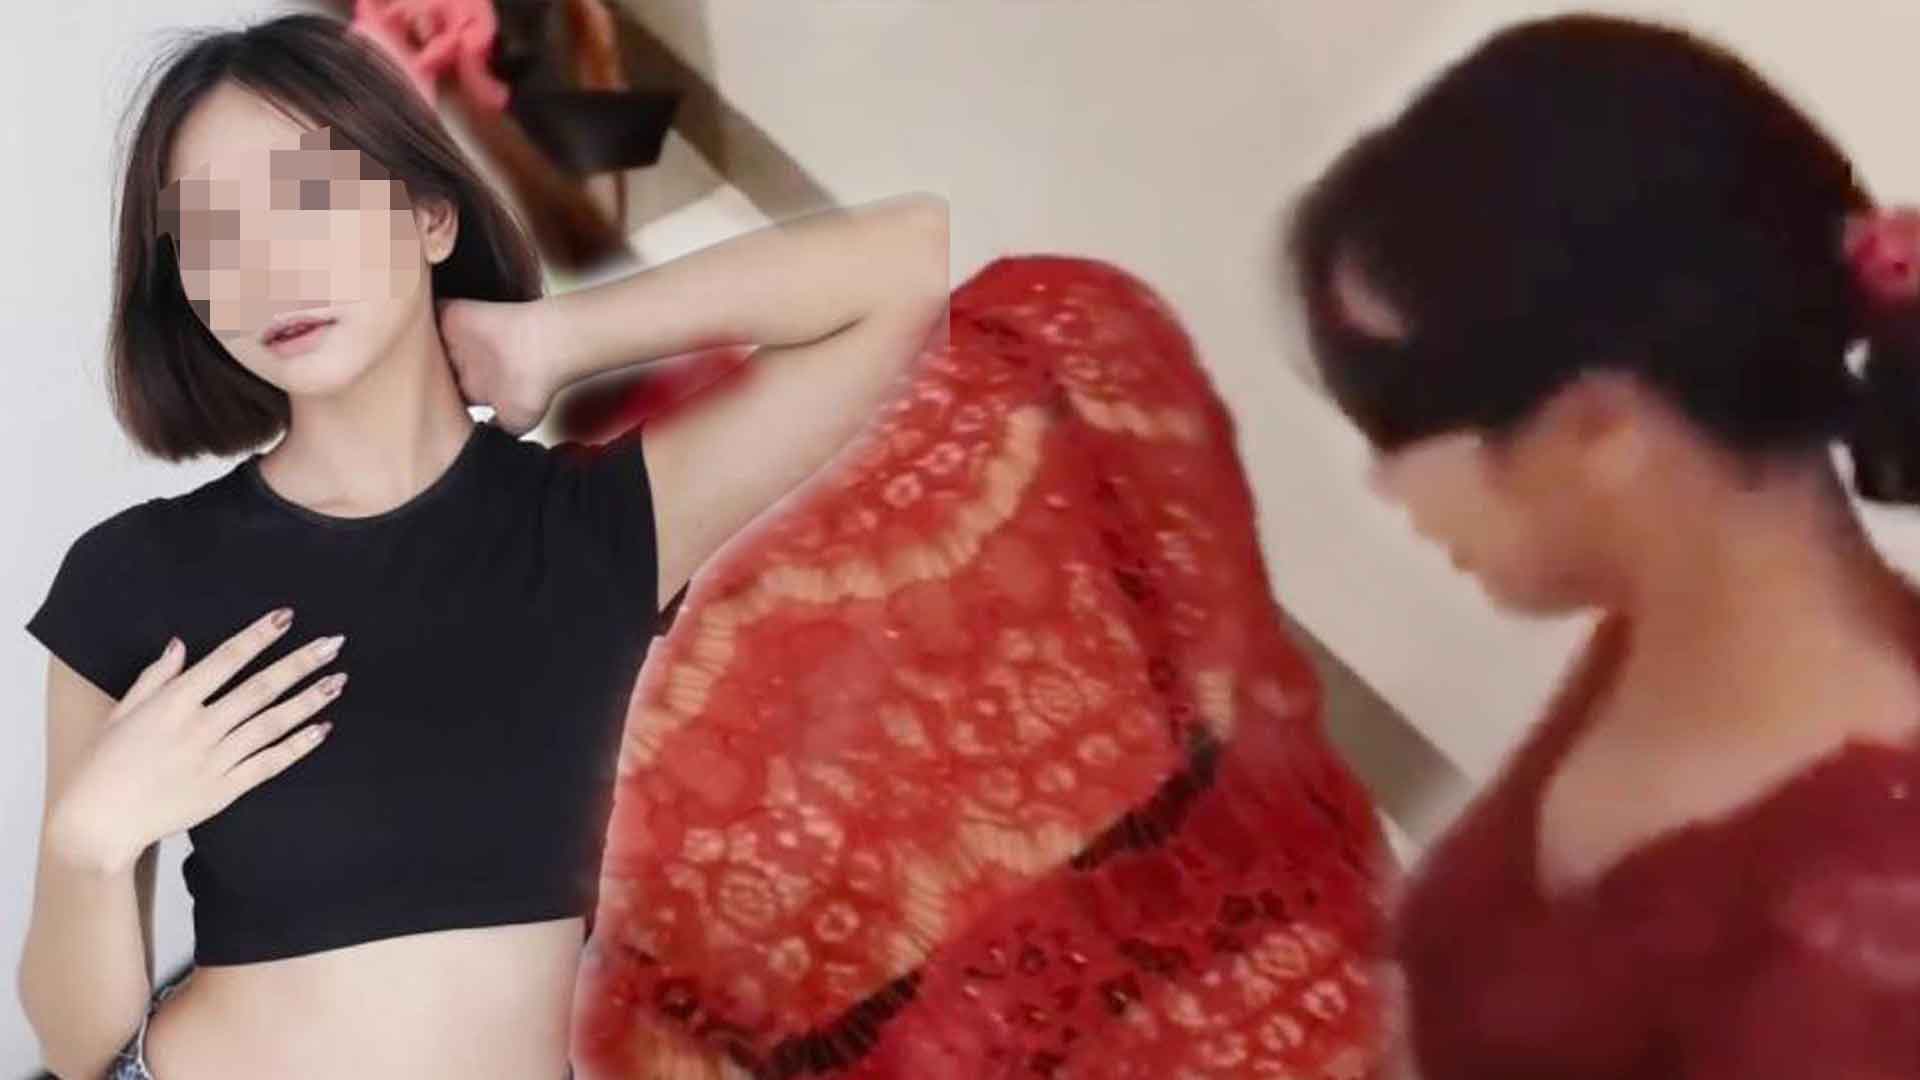 Murah Banget, Honor Wanita Video Porno Kebaya Merah untuk Beradegan Bokep  Hanya Dibayar Segini